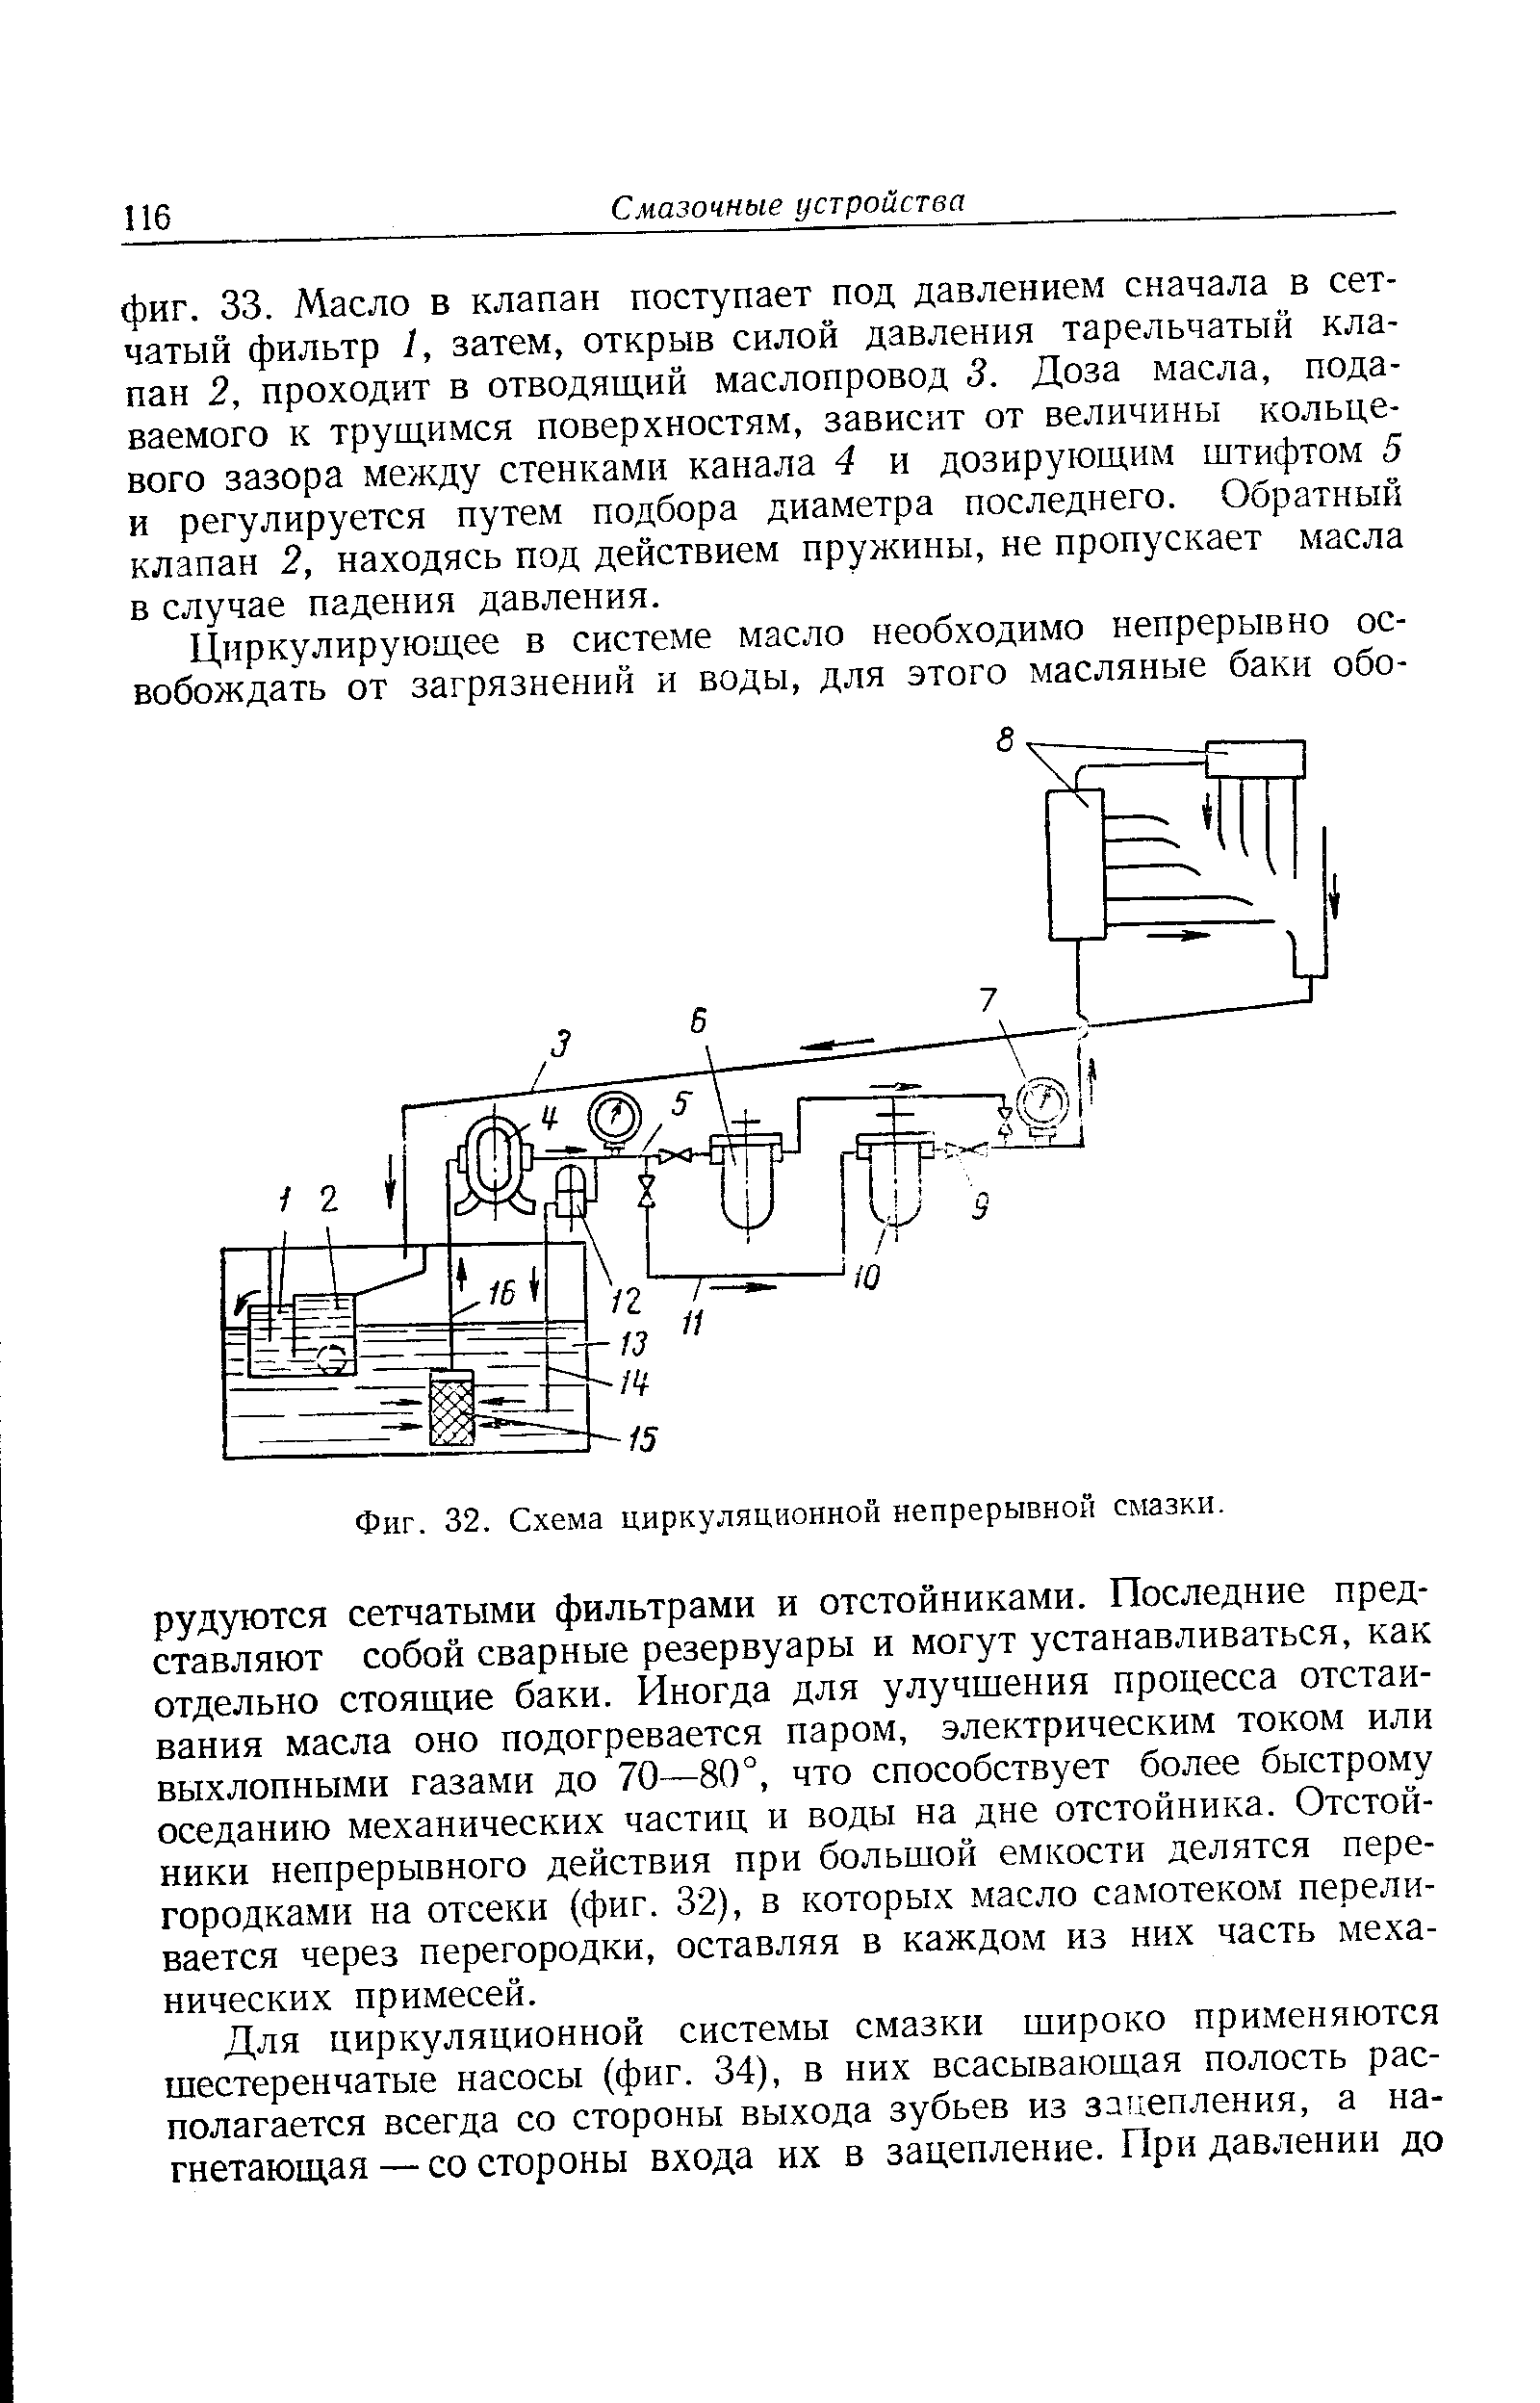 Фиг. 32, Схема циркуляционной непрерывной смазки.
